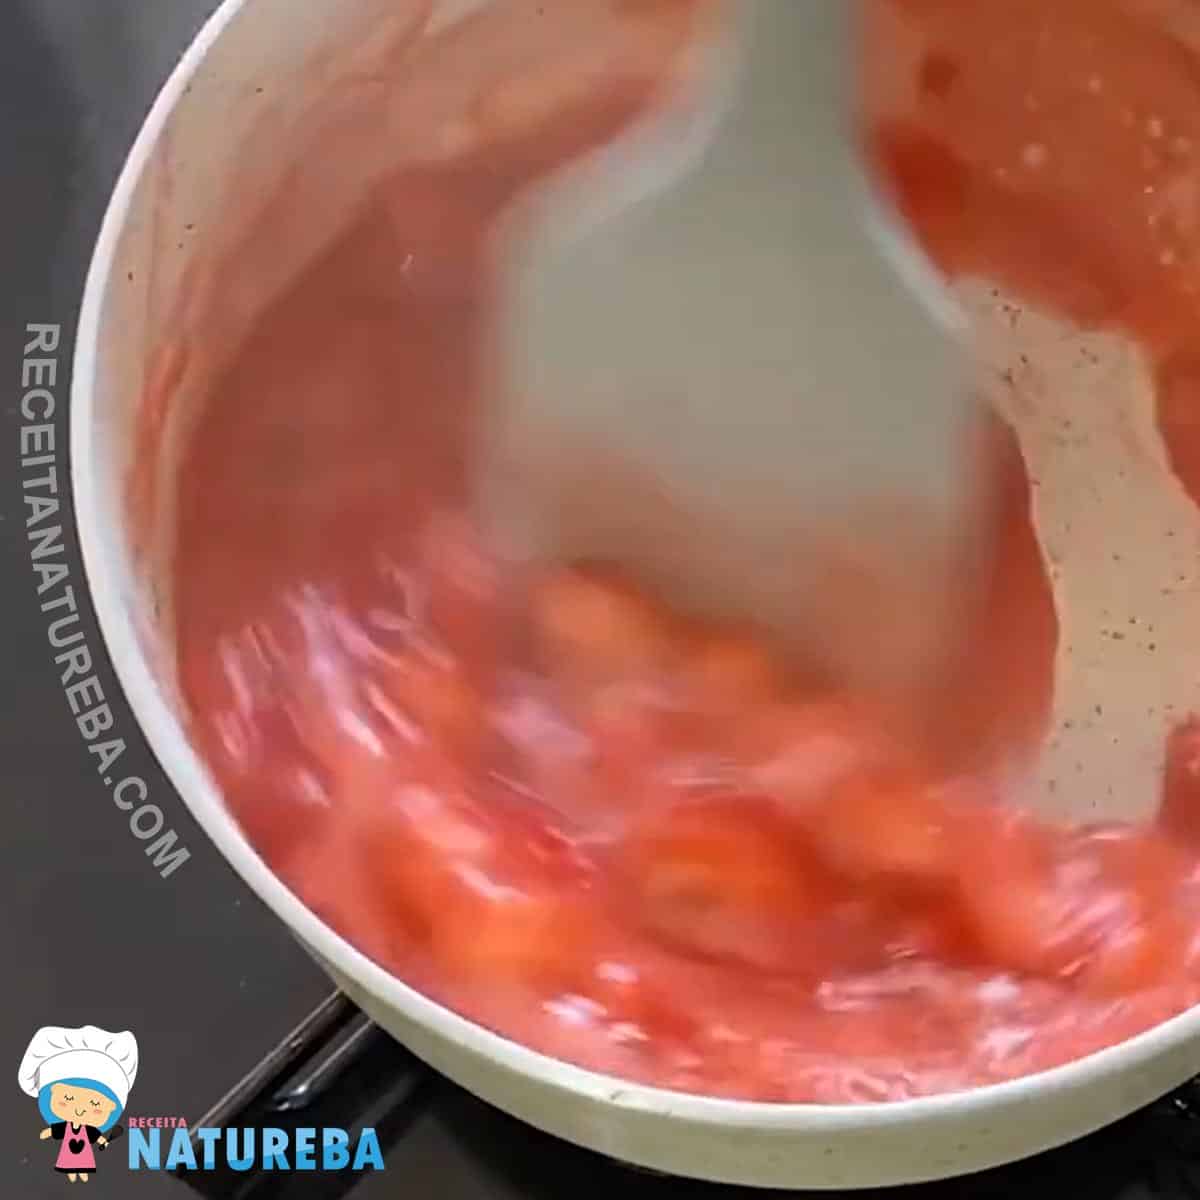 mexendo a geleia de morango fit sem açucar dentro da panela